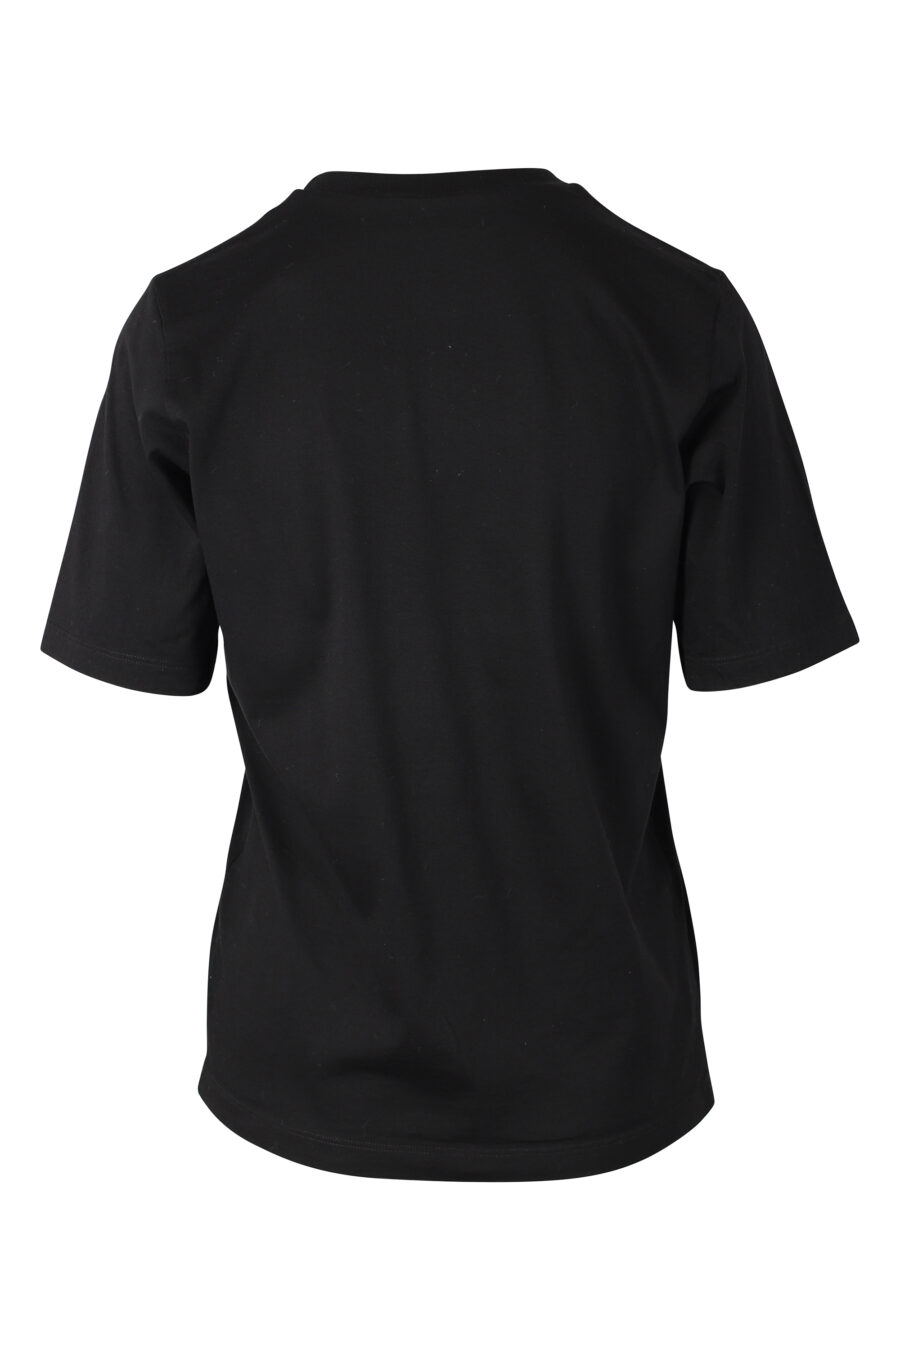 T-shirt black with double logo "icon sunset" - IMG 9784